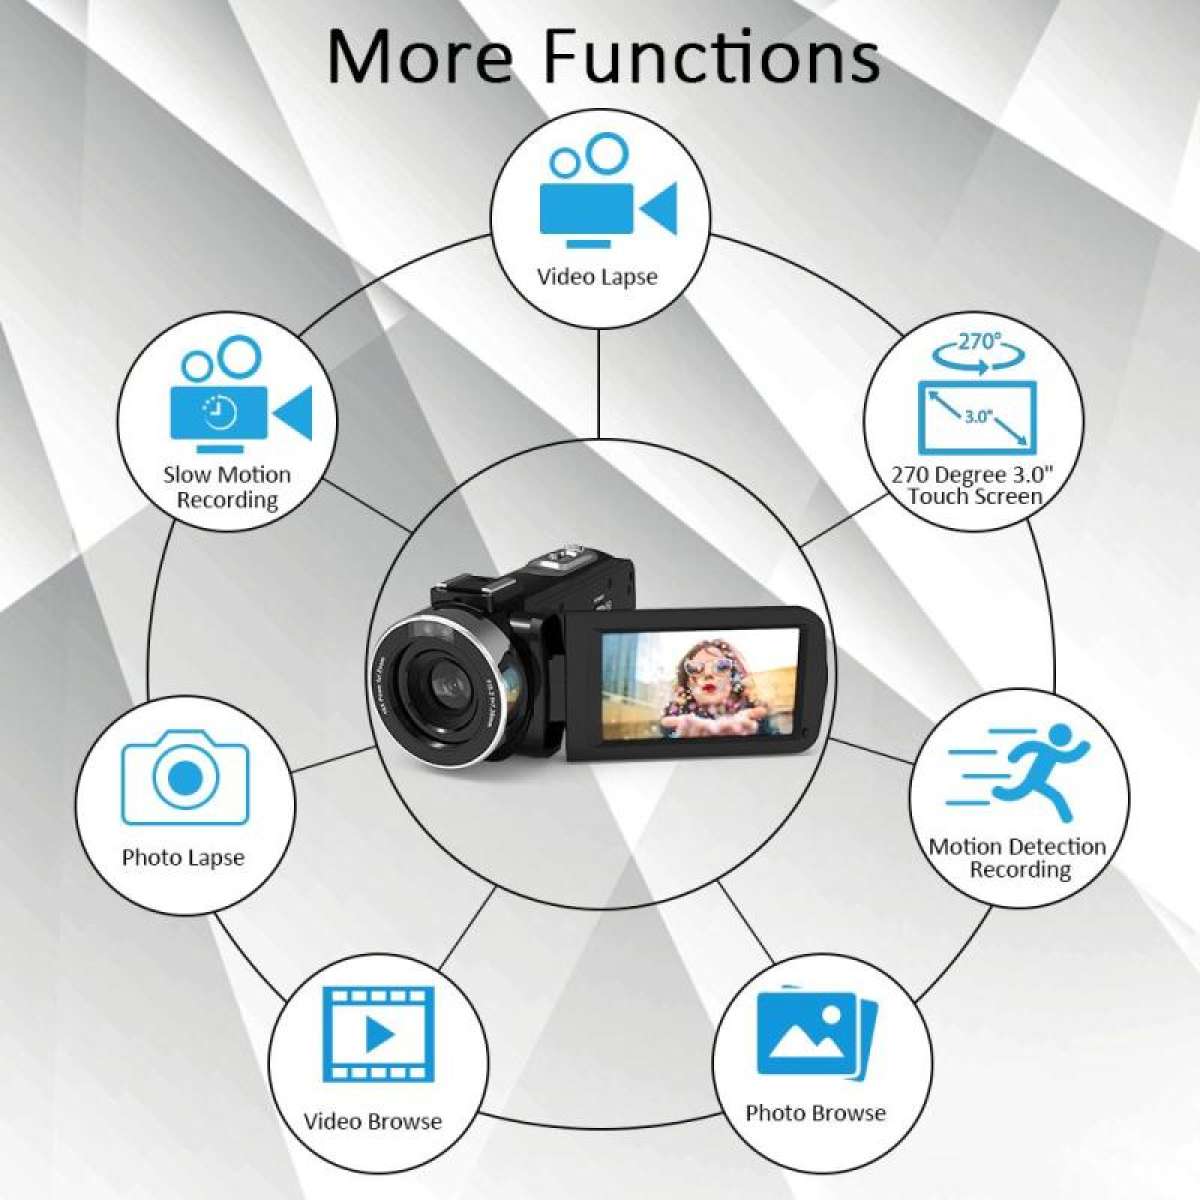 คำอธิบายเพิ่มเติมเกี่ยวกับ กล้องถ่ายวีดีโอ กล้องวีดีโอ กล้องถ่าย V-log  Full HD TOUCH Camera 1080P 30FPS กล้องดิจิตอล พร้อมไมโครโฟนและรีโมตคอนโทรล Techrep